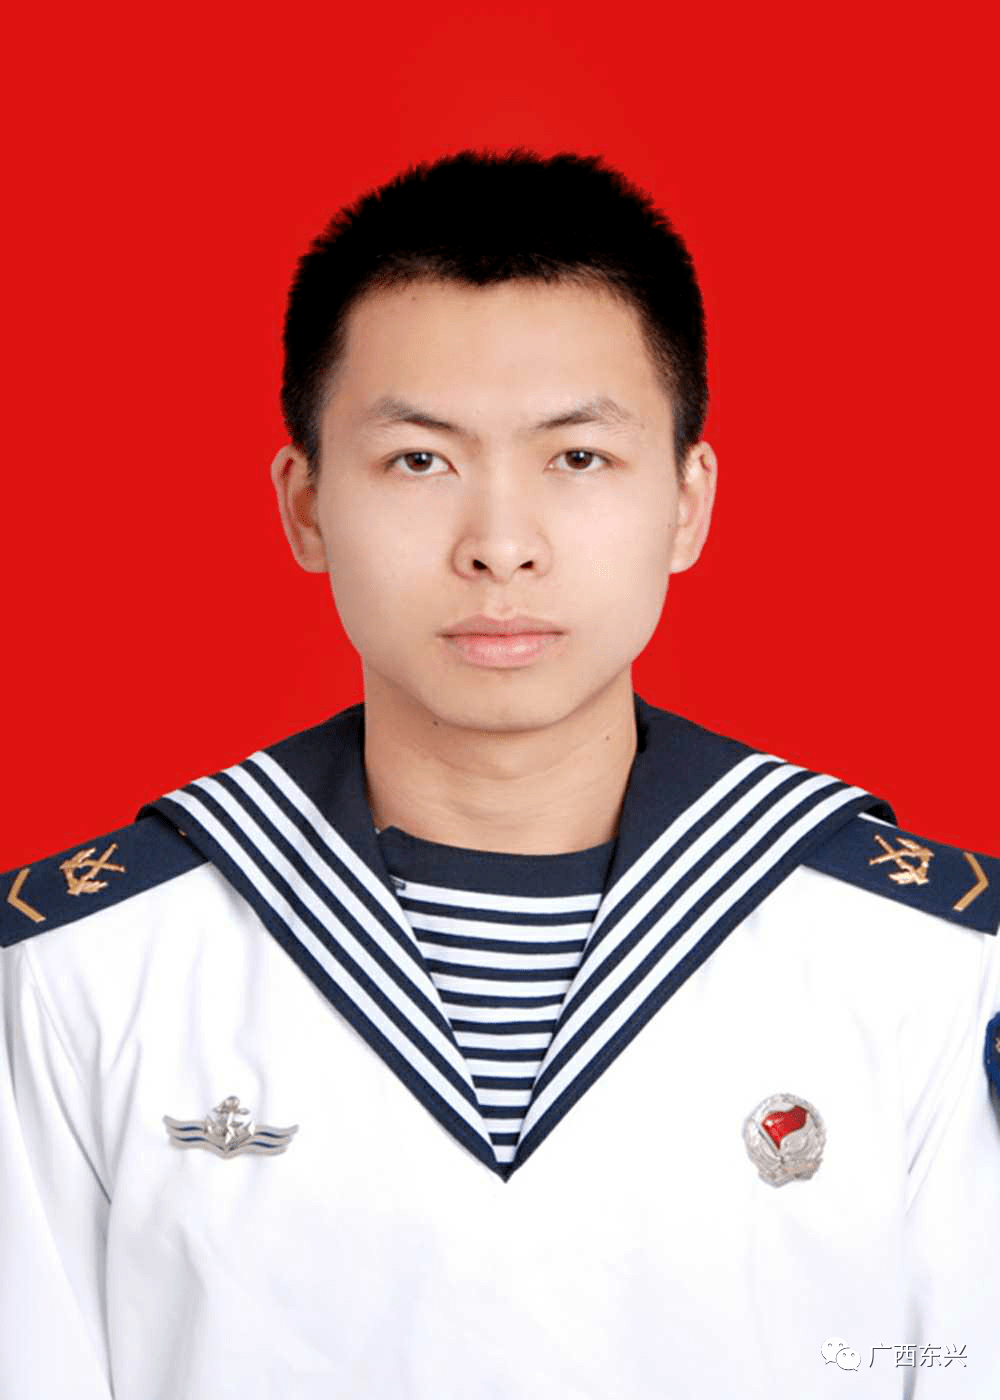 符文彦,广西防城港市东兴人,2017年9月入伍,现任海军某部某队班长